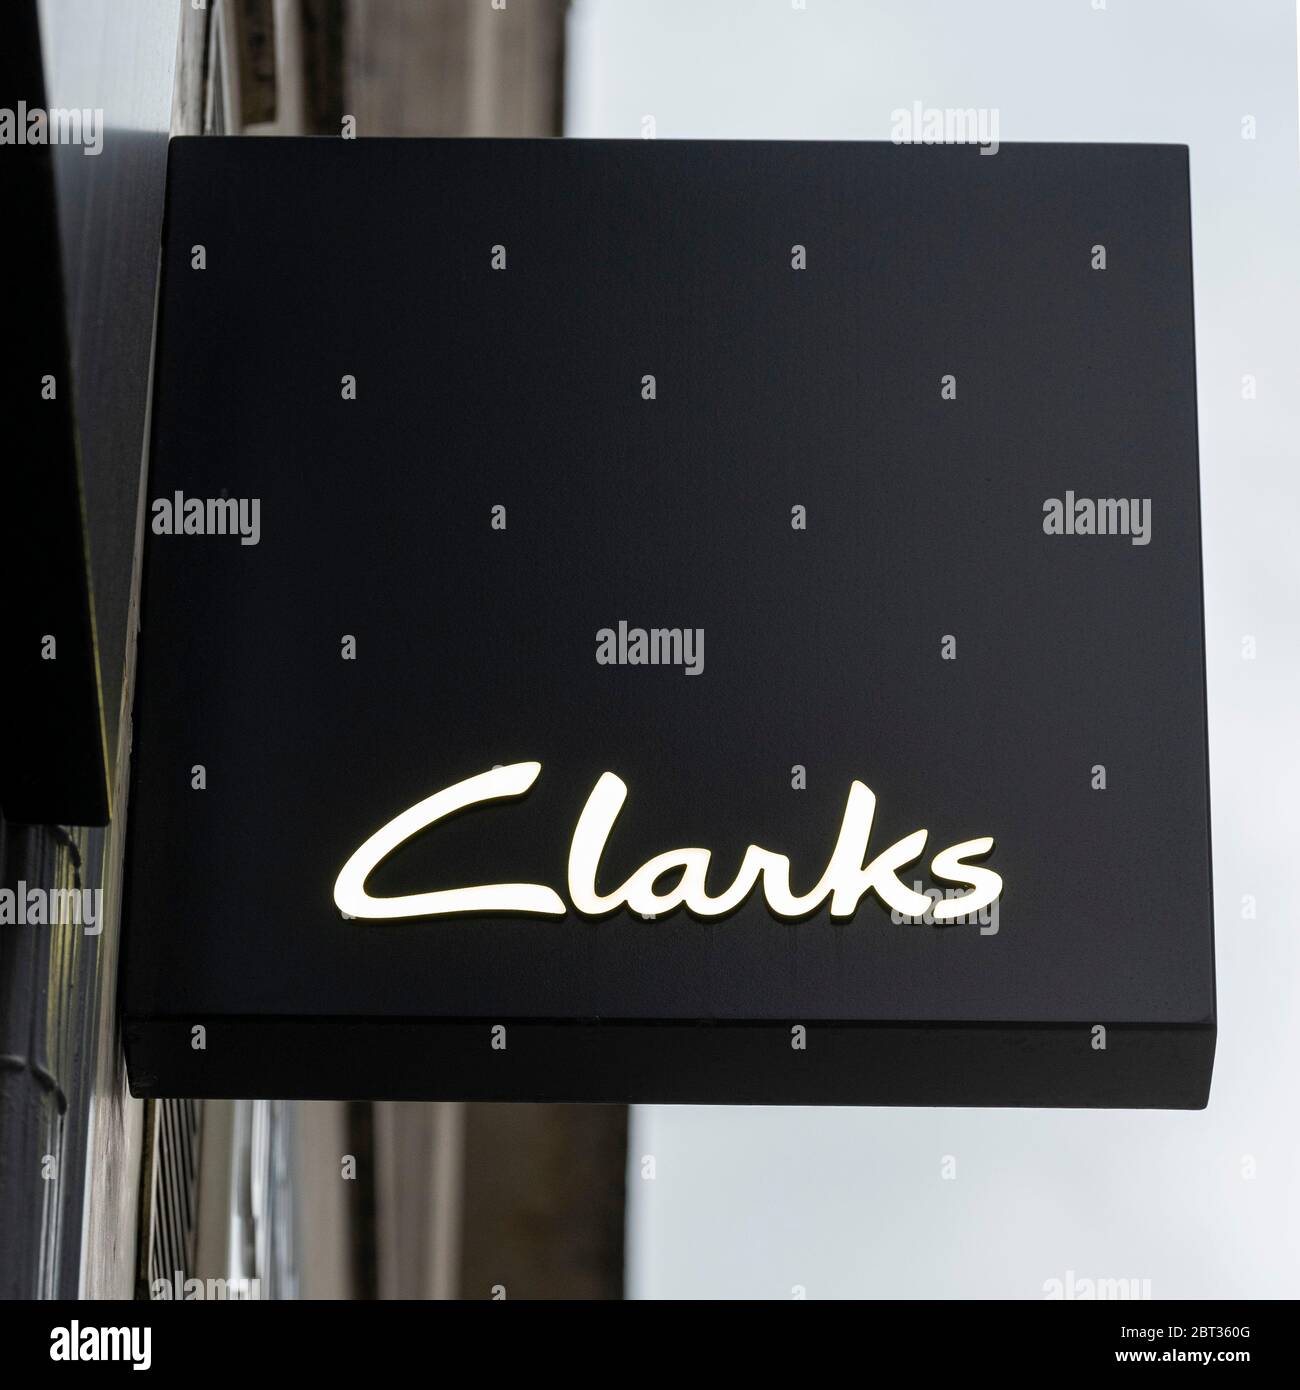 clarks head office uk